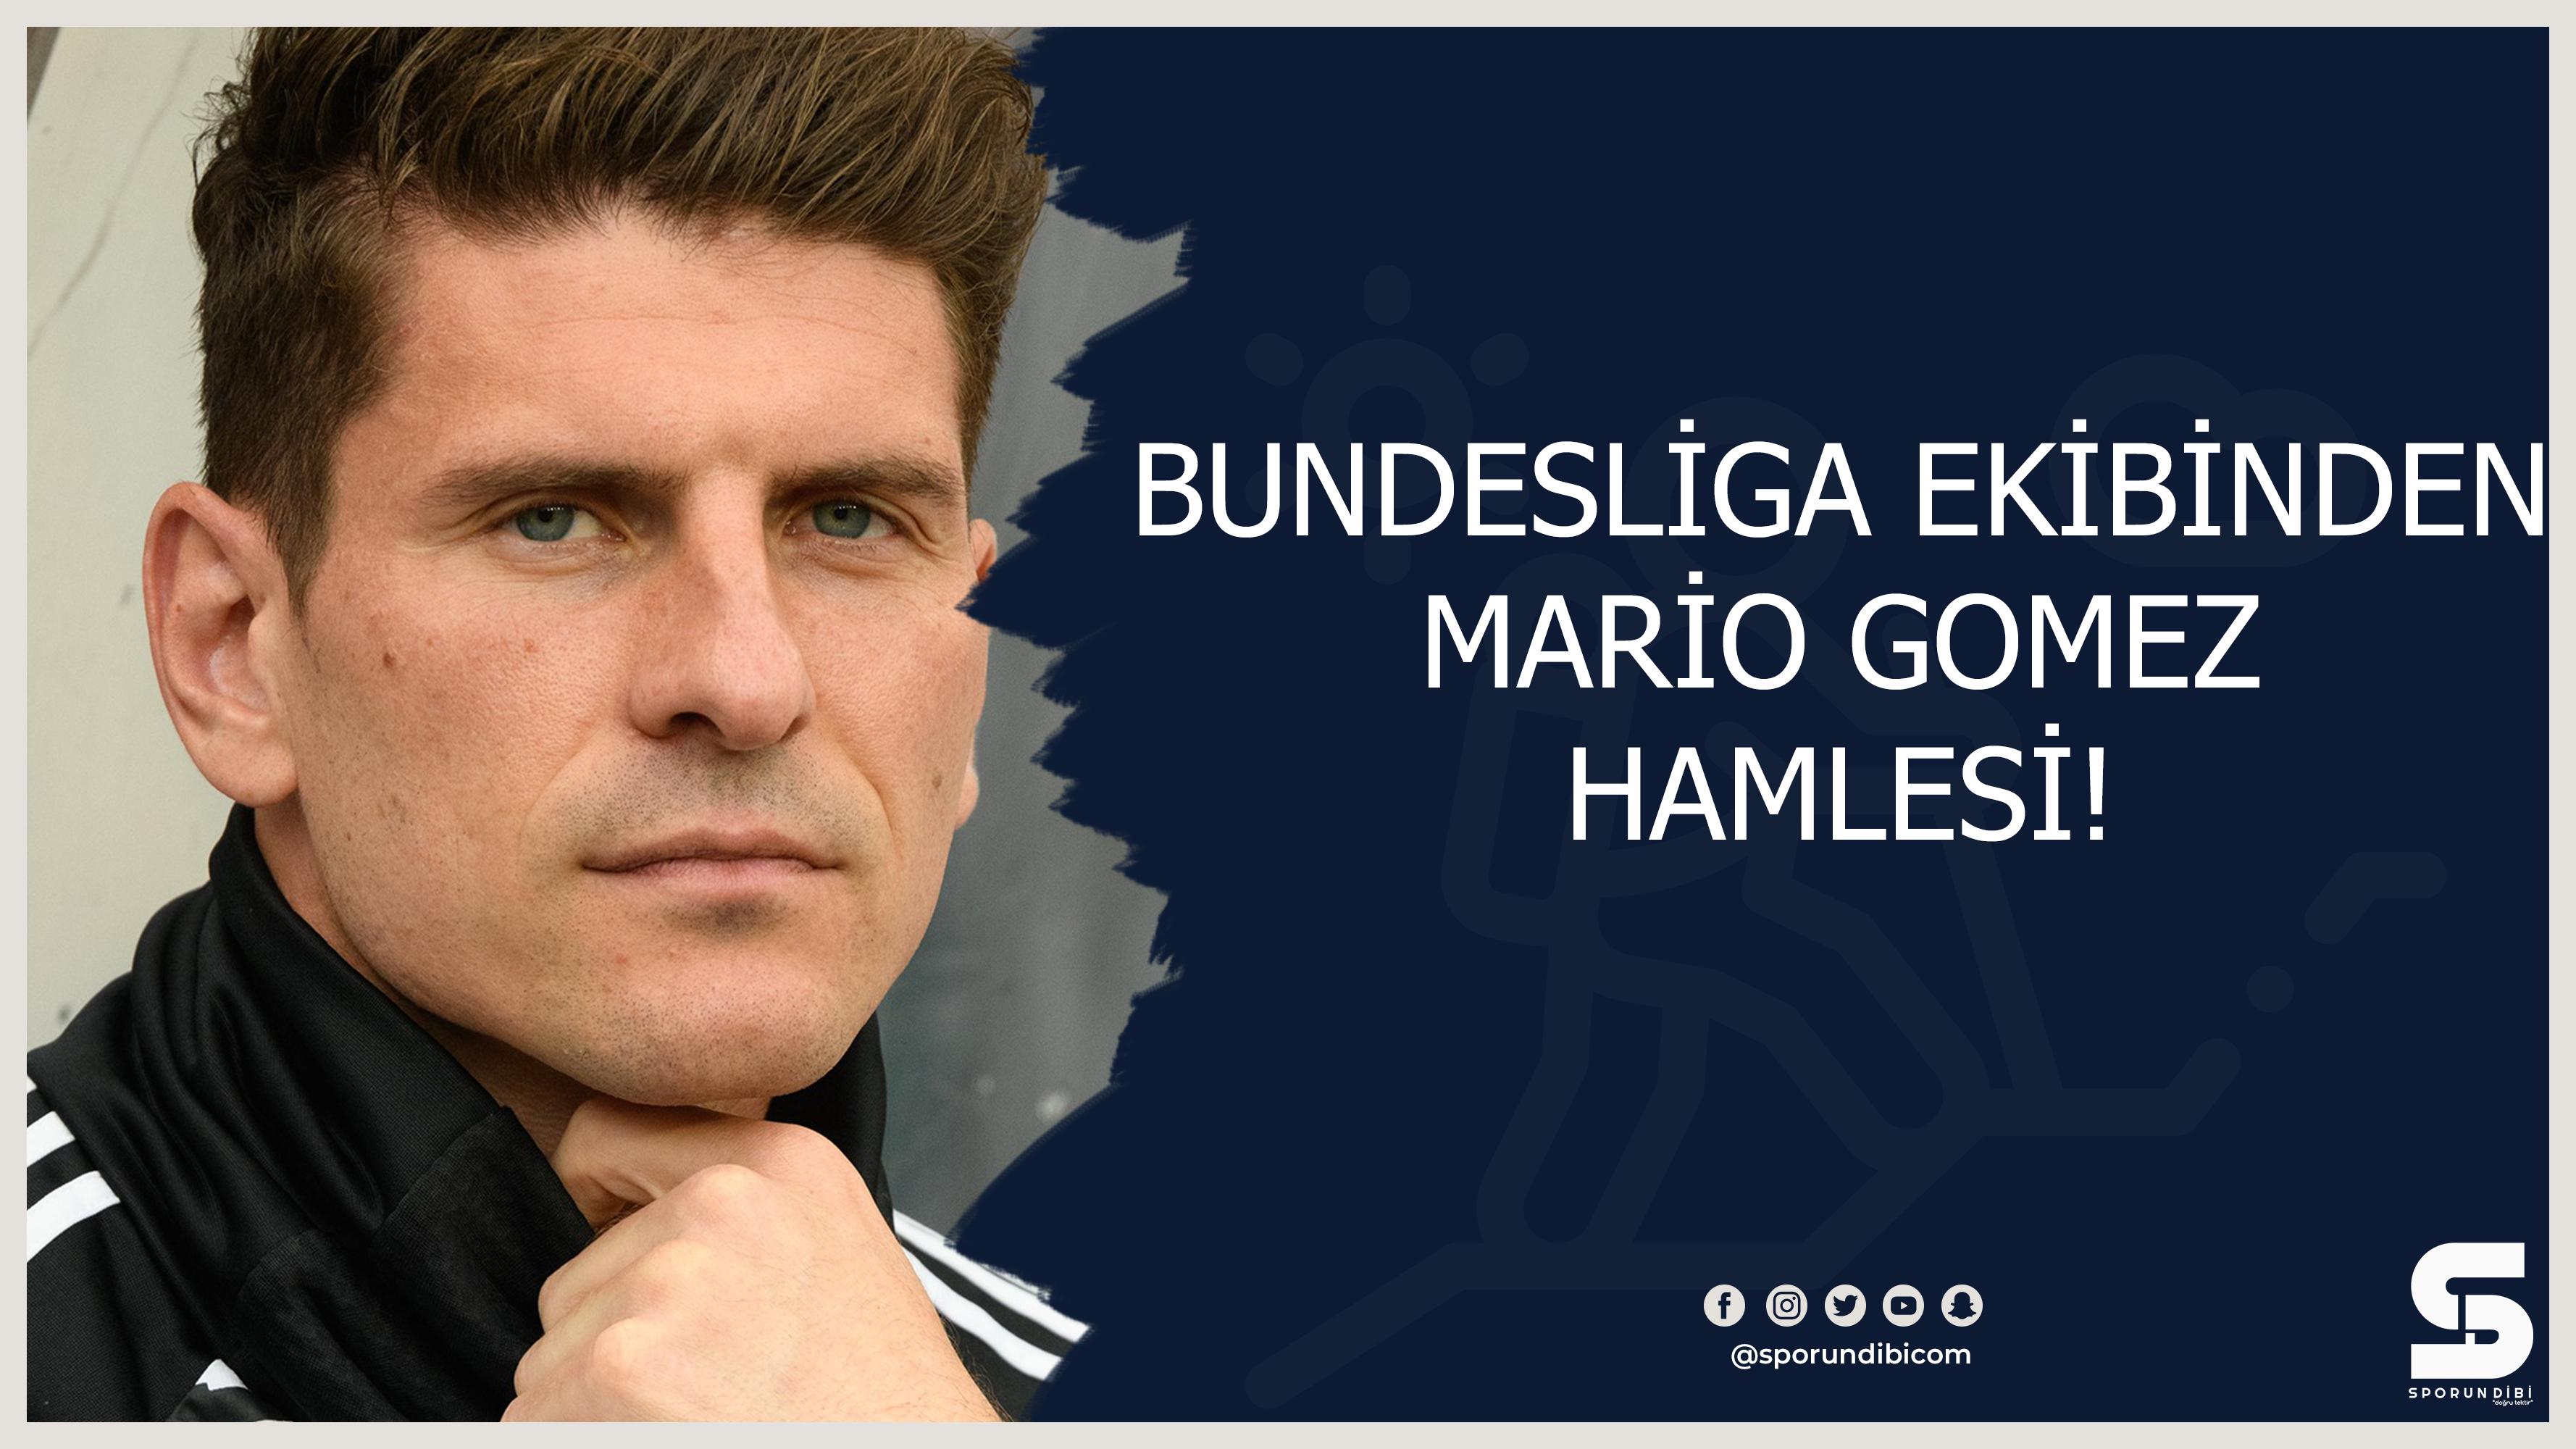 Bundesliga ekibinden Mario Gomez hamlesi!